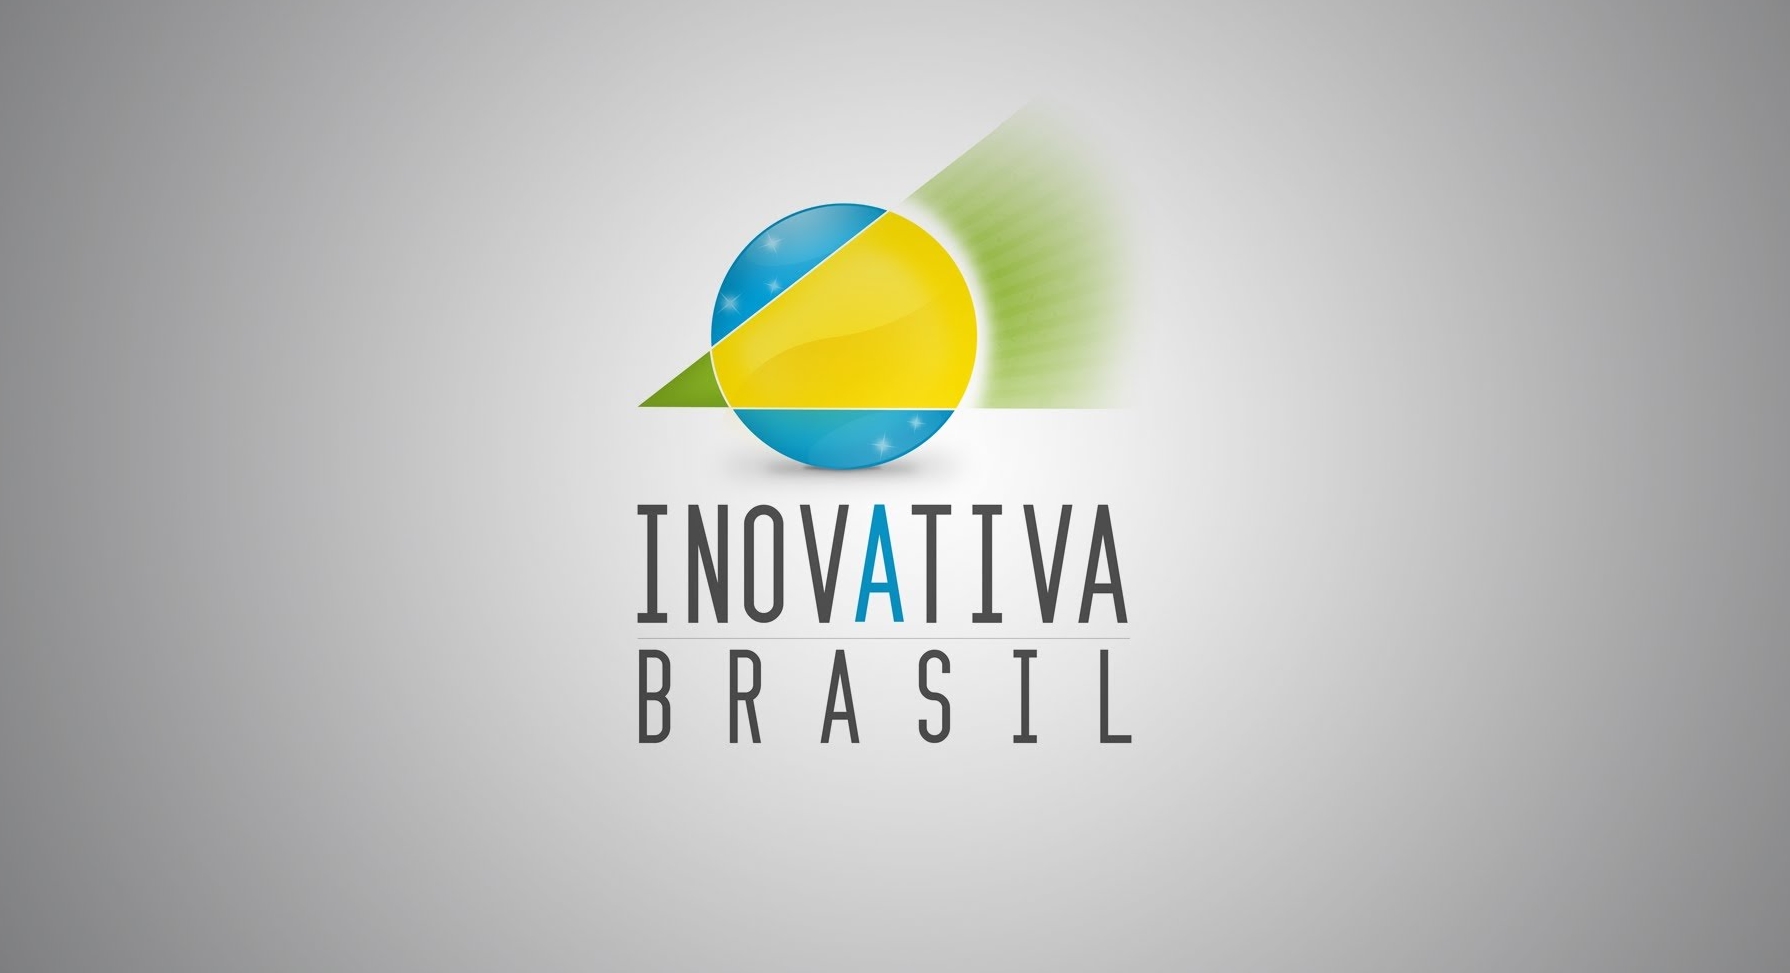 INSCRIÇÕES PARA O INOVATIVA BRASIL VÃO ATÉ 28 DE JUNHO